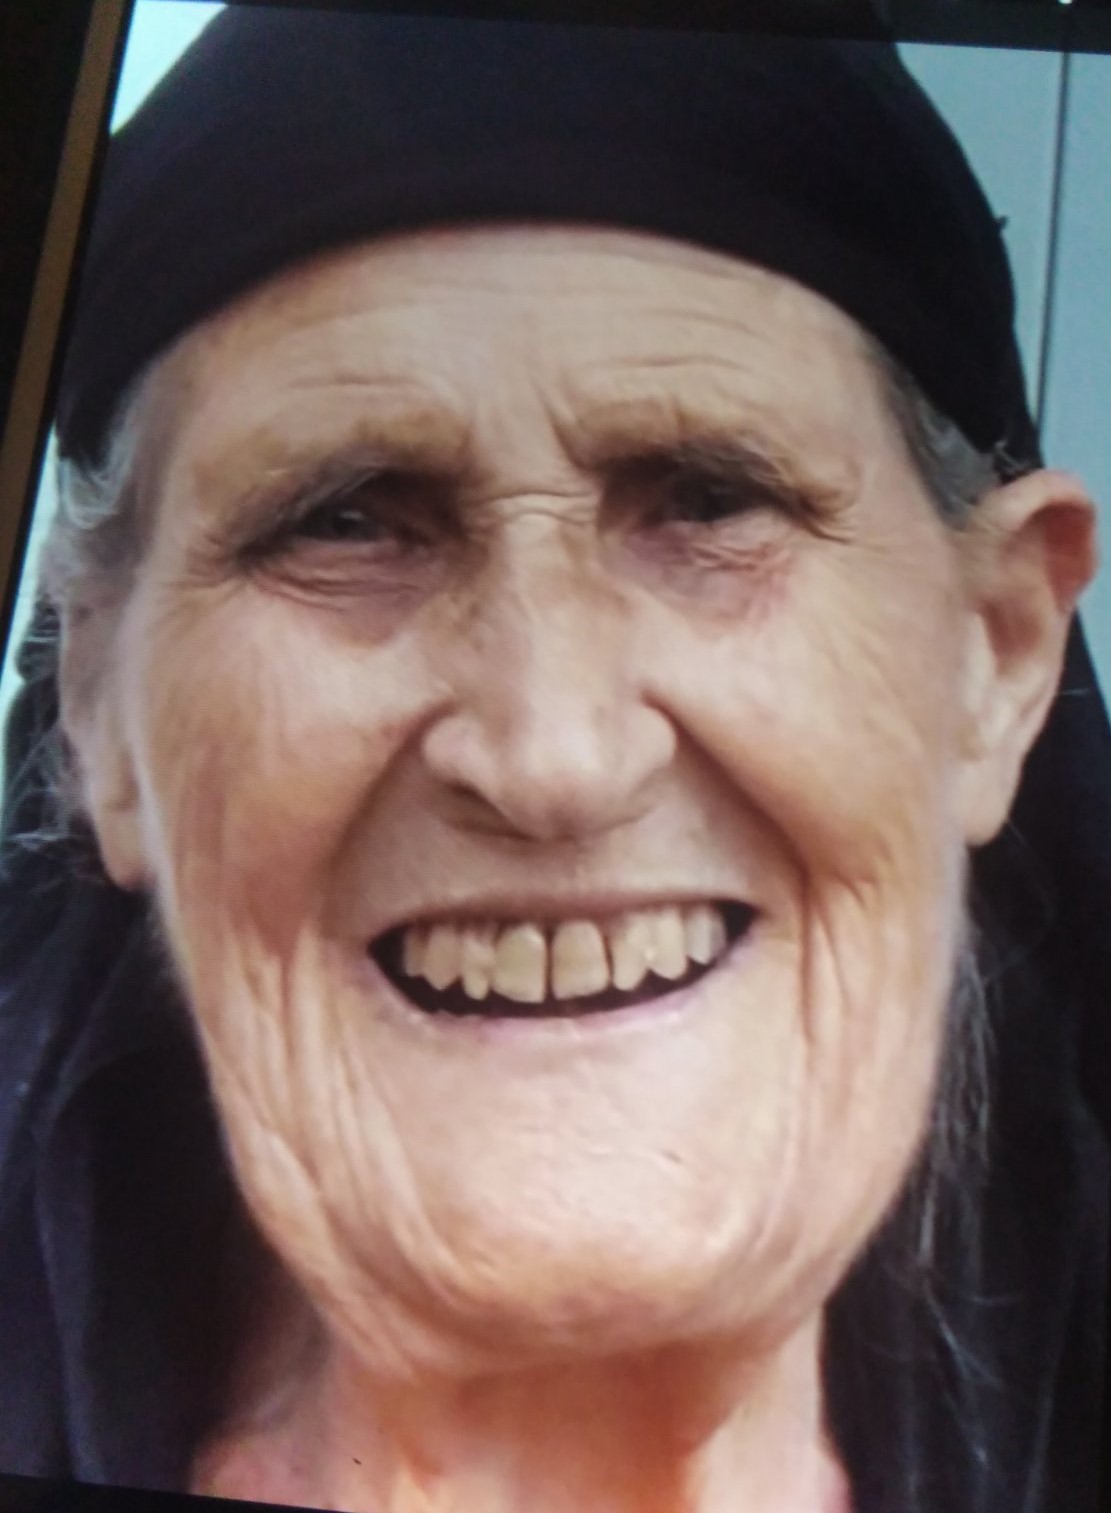 Έφυγε από την ζωή η Kυριακή Ματέρη  σε ηλικία 92 ετών- Η κηδεία θα τελεστεί σήμερα Τρίτη 23 Αυγούστου